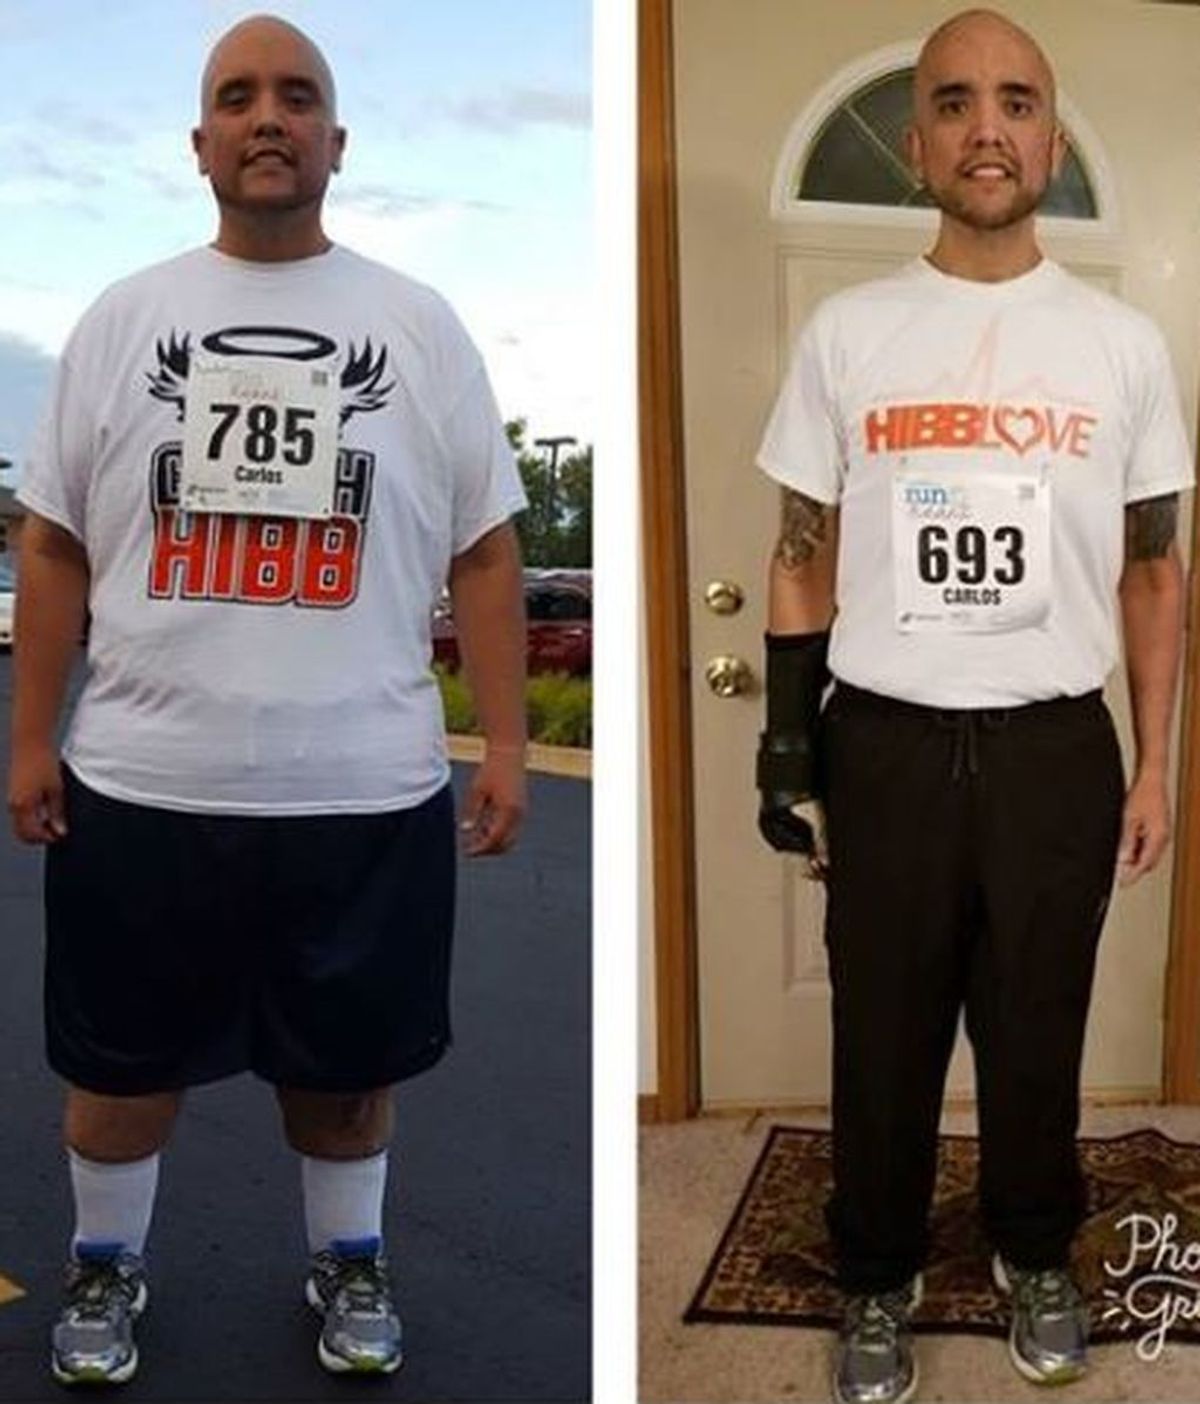 Un hombre pierde 204 kilogramos al descubrir su pasión por correr